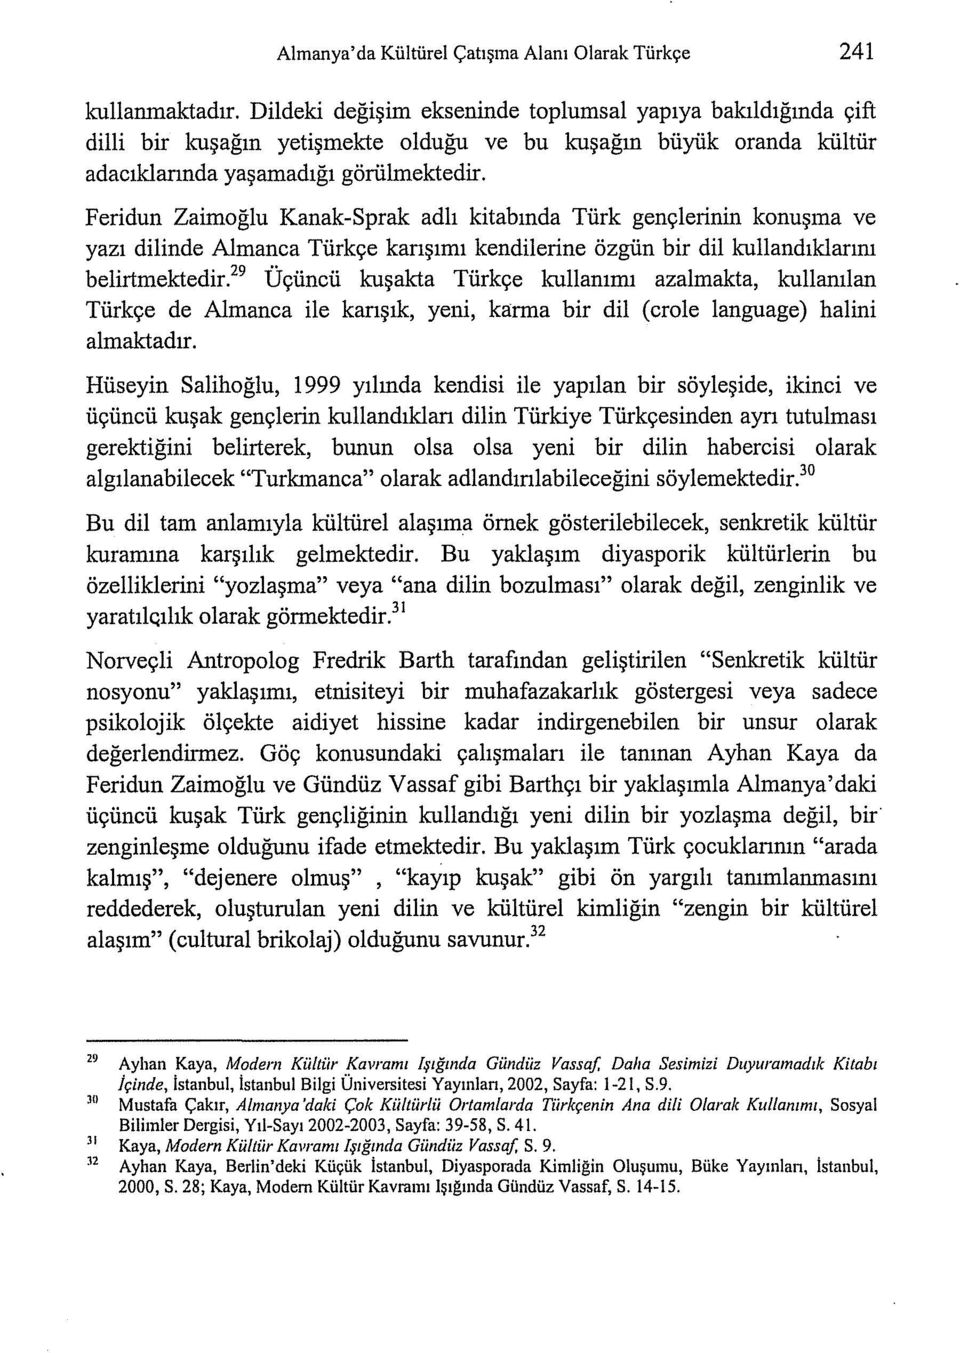 Feridun Zaimoğlu Kanak-Sprak adlı kitabında Türk gençlerinin konuşma ve yazı dilinde Almanca Türkçe karışımı kendilerine özgün bir dil kullandıklarını belirtmektedir.